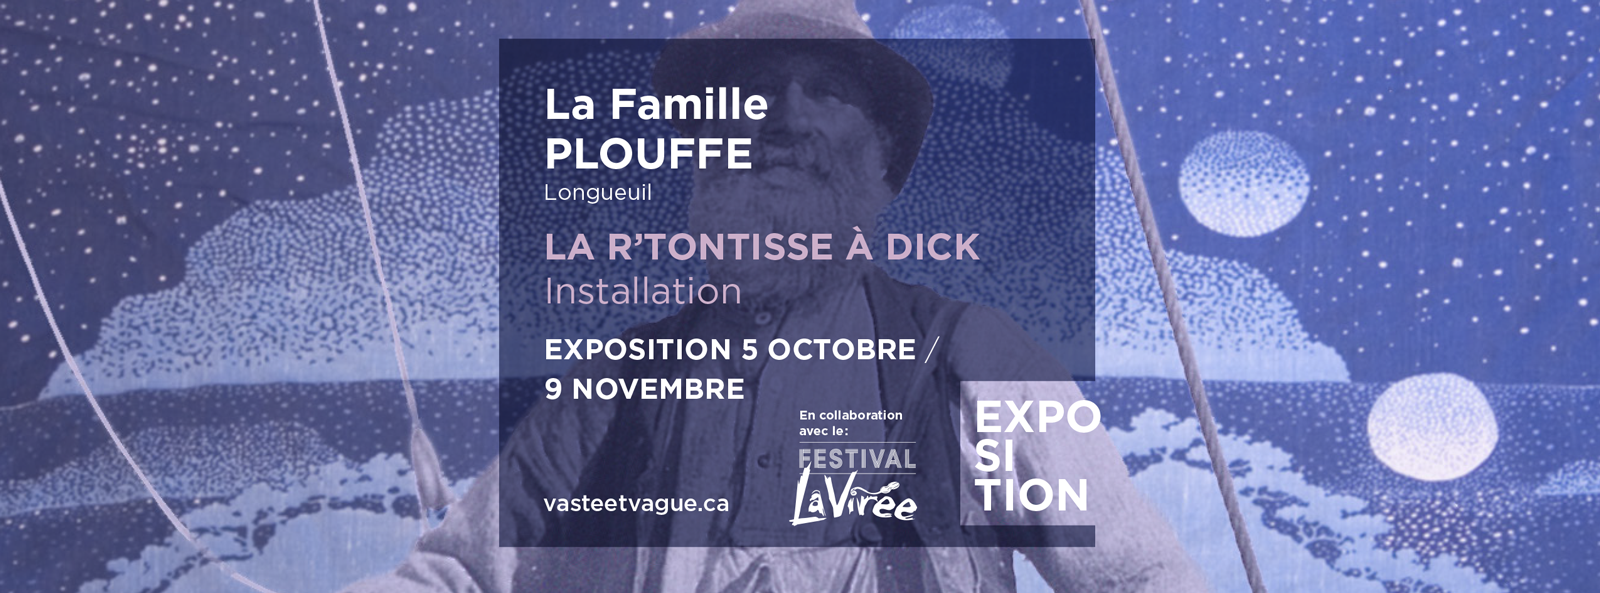 La Famille PLOUFFE, Longueuil LA R'TONTISSE À DICK | Installation | Cenrte d'artistes Vaste et Vague